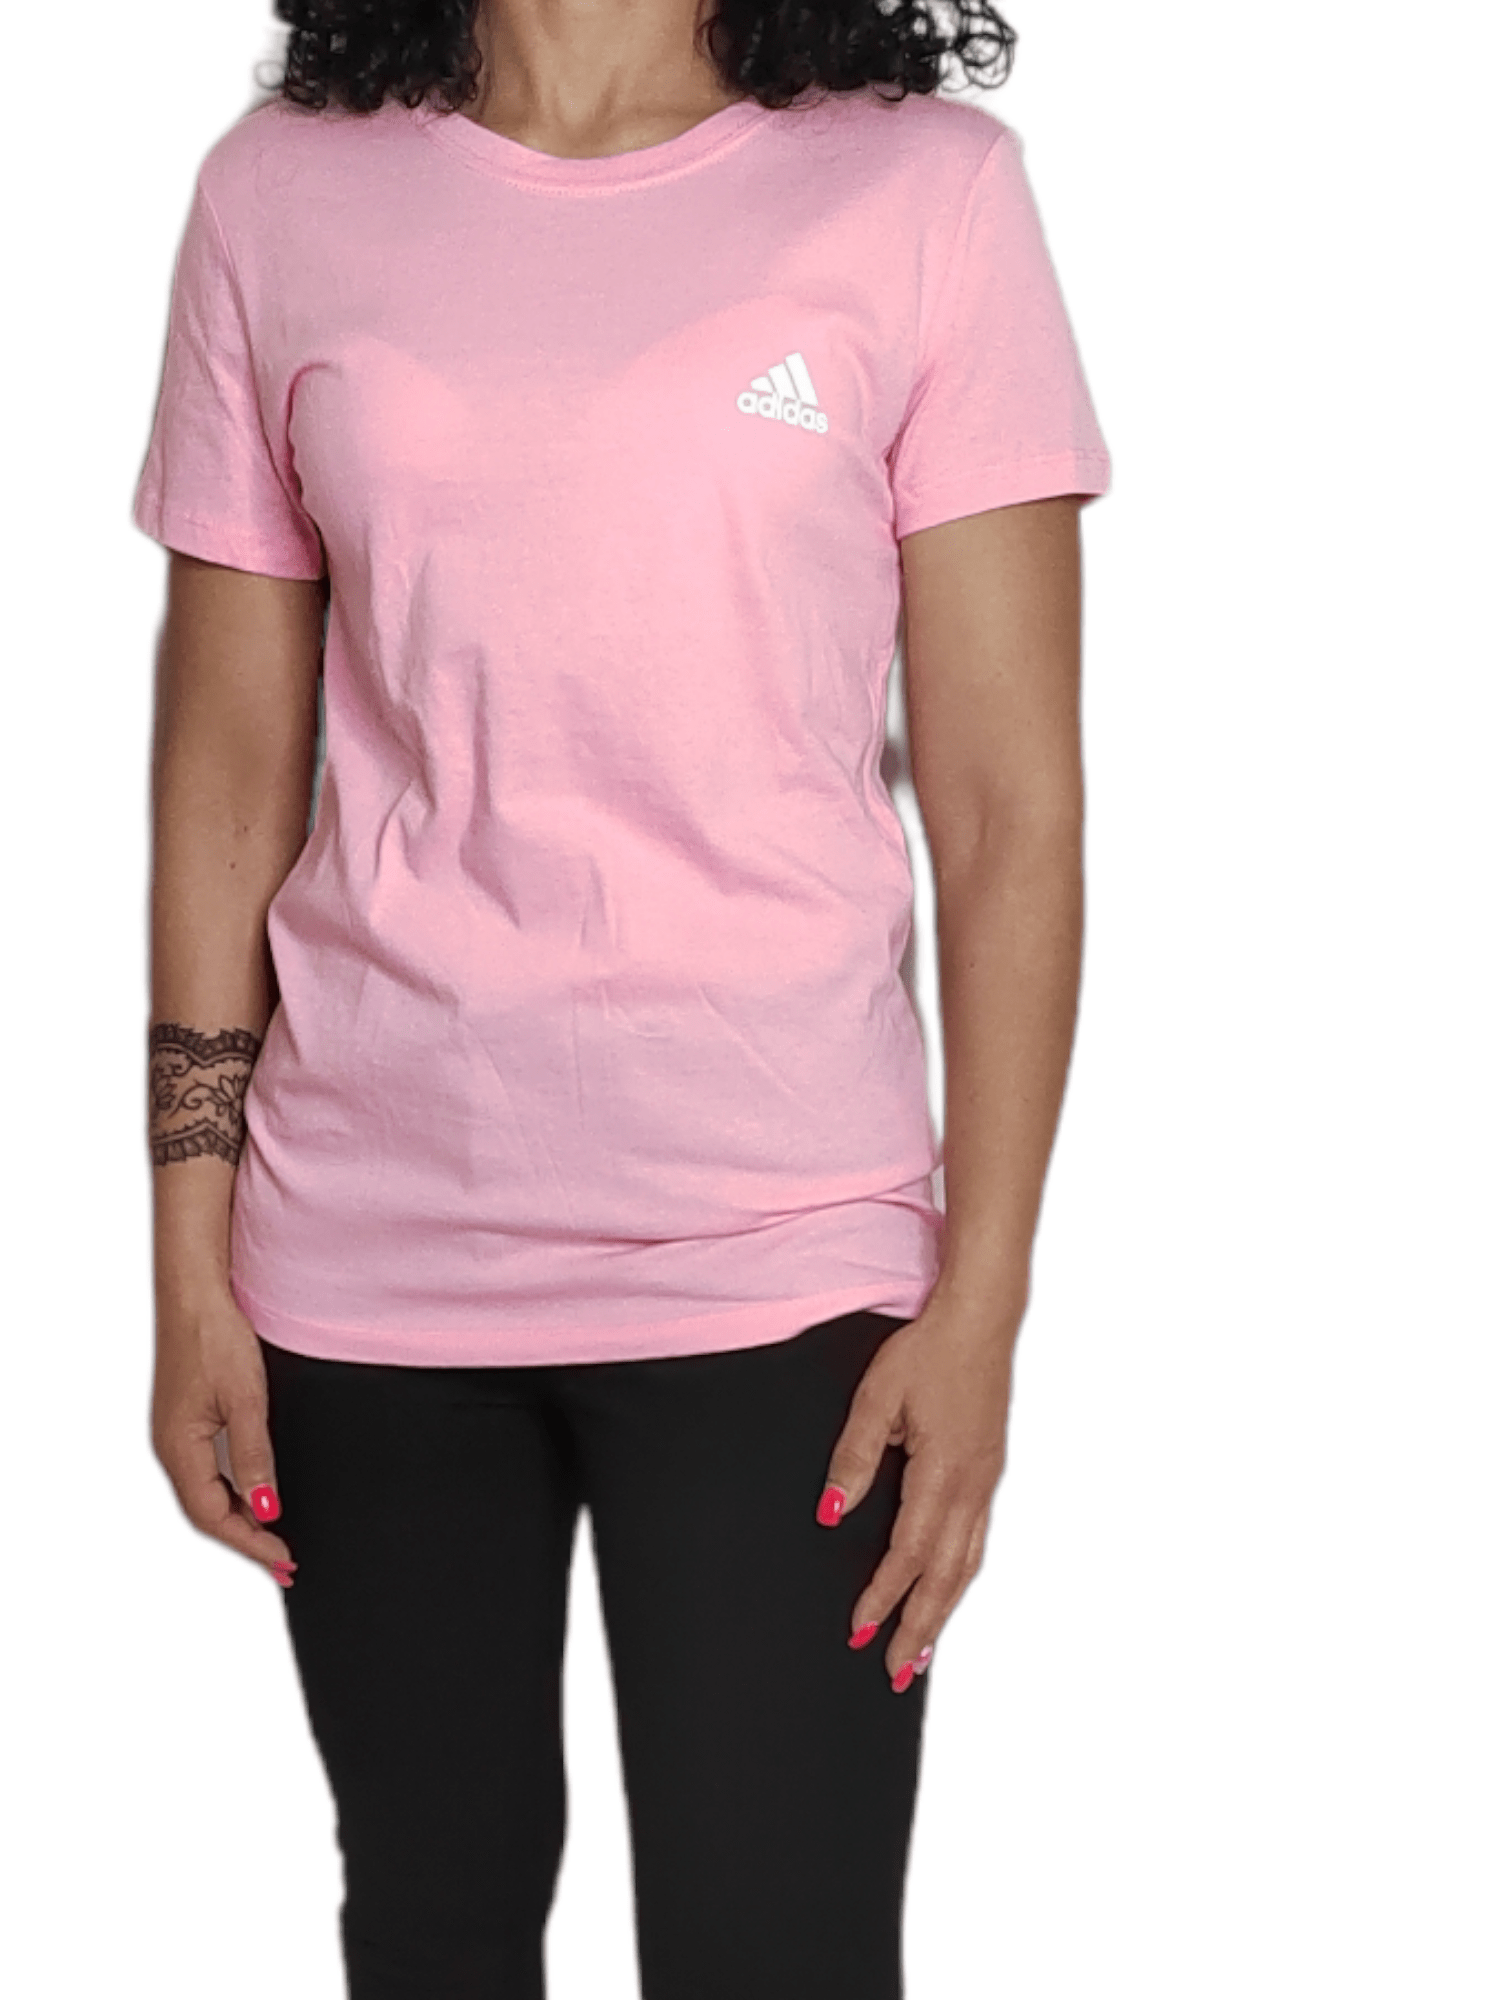 ElOutlet - Summer Women Women T-Shirt M Women Tshirt - small logo (side) - Pink